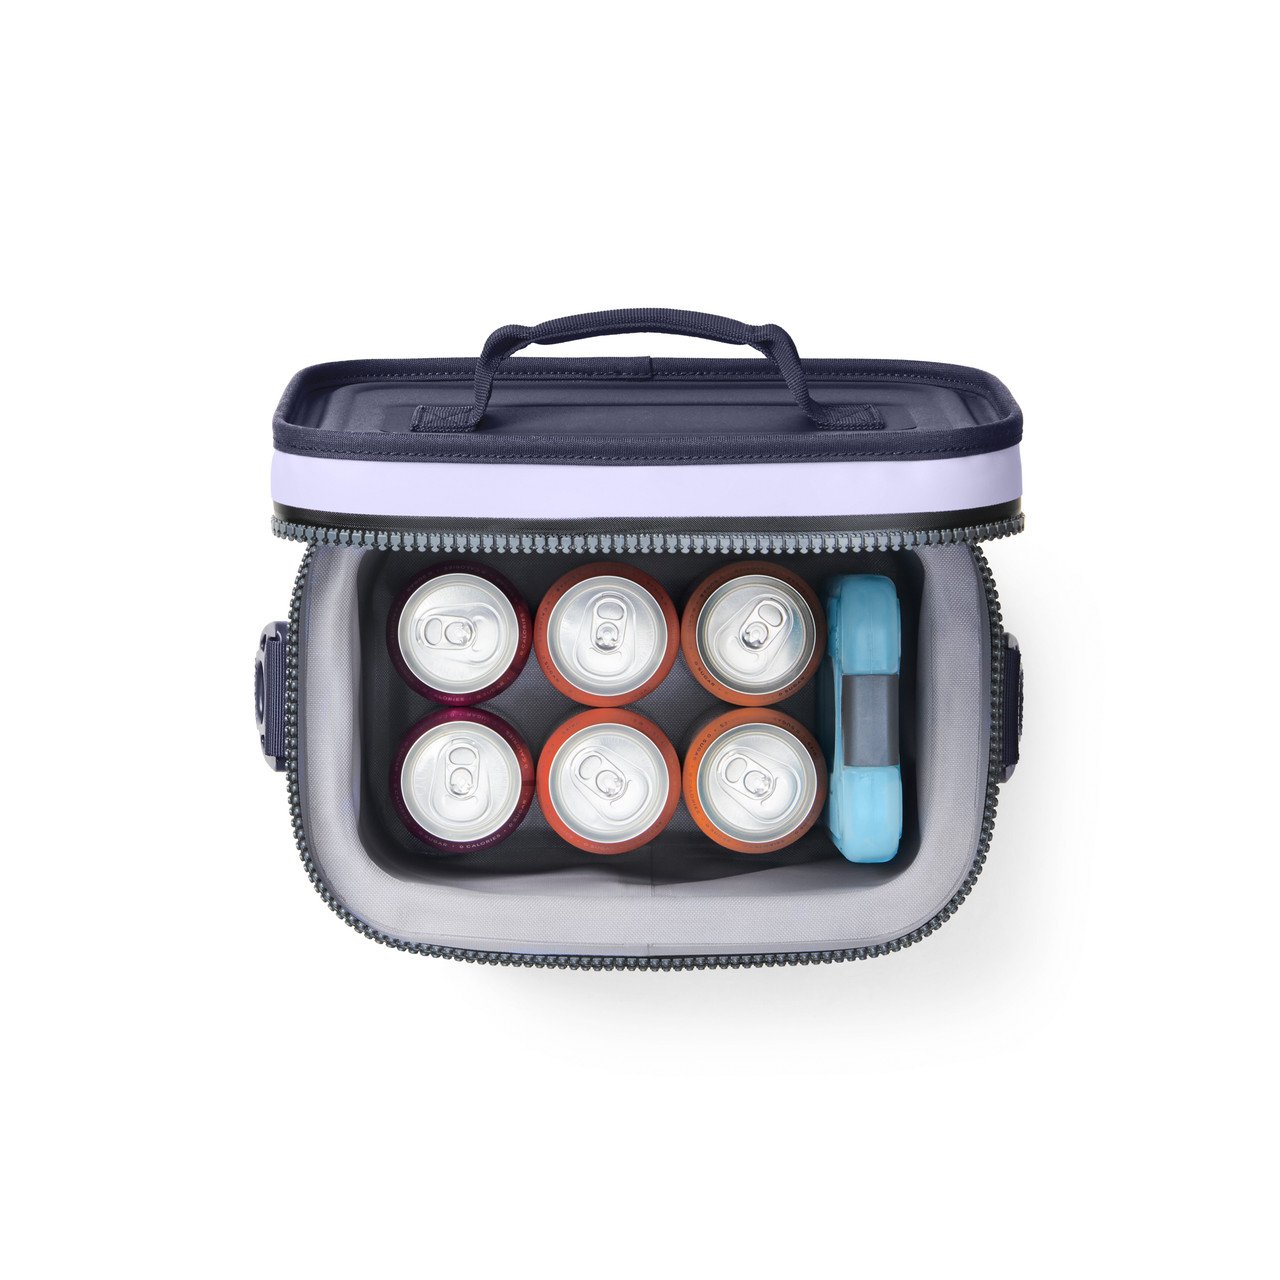 Yeti Daytrip Lunch Box - Cosmic Lilac